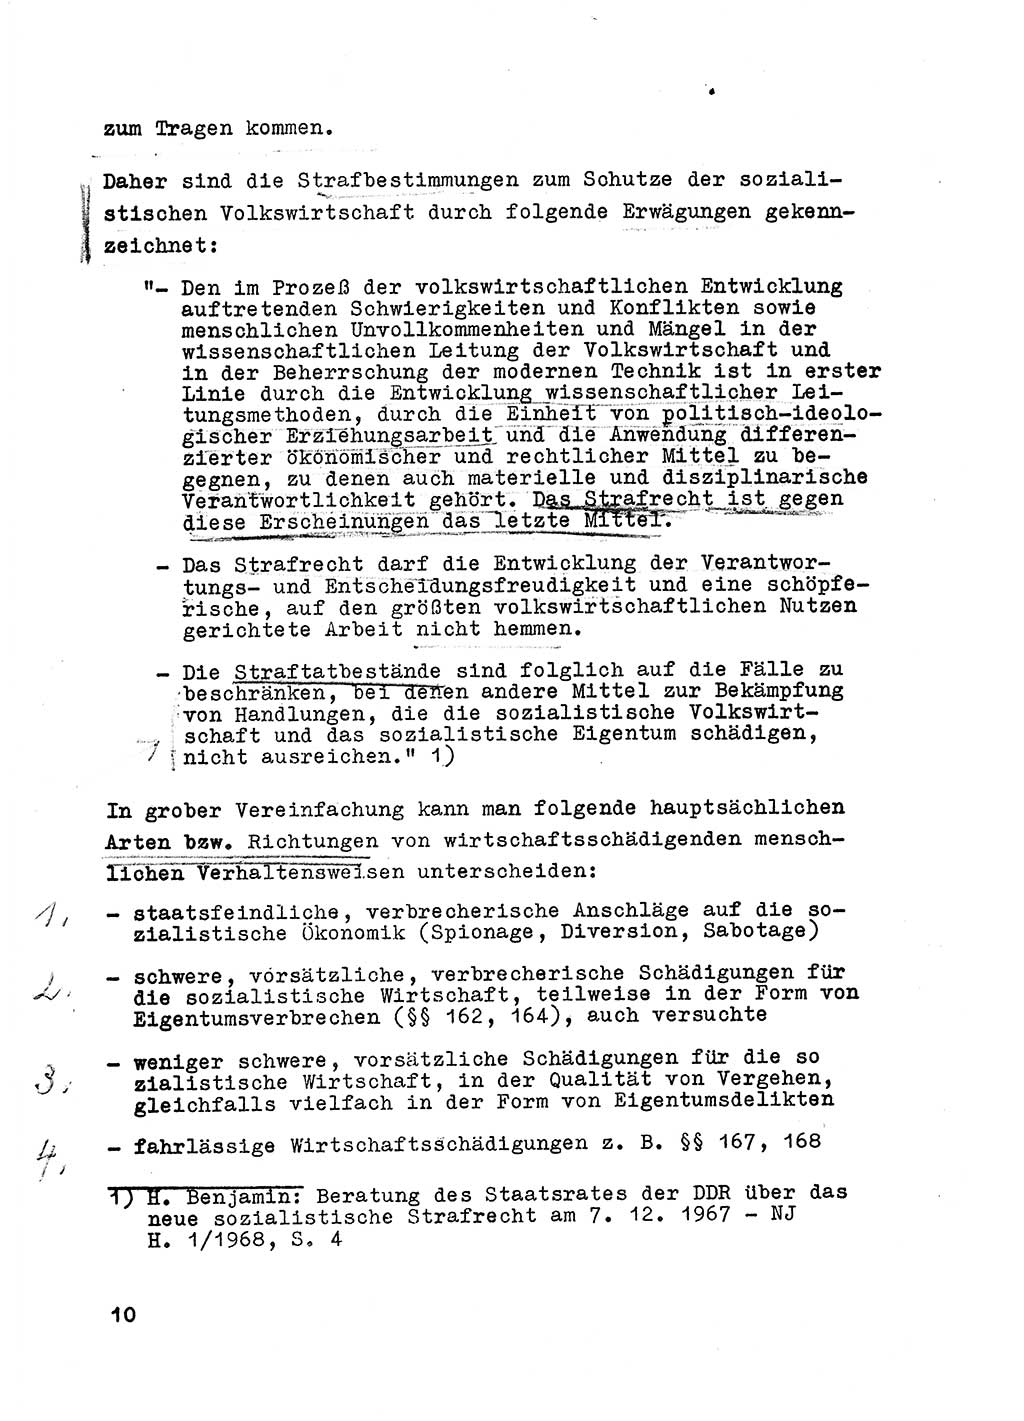 Strafrecht der DDR (Deutsche Demokratische Republik), Besonderer Teil, Lehrmaterial, Heft 6 1970, Seite 10 (Strafr. DDR BT Lehrmat. H. 6 1970, S. 10)